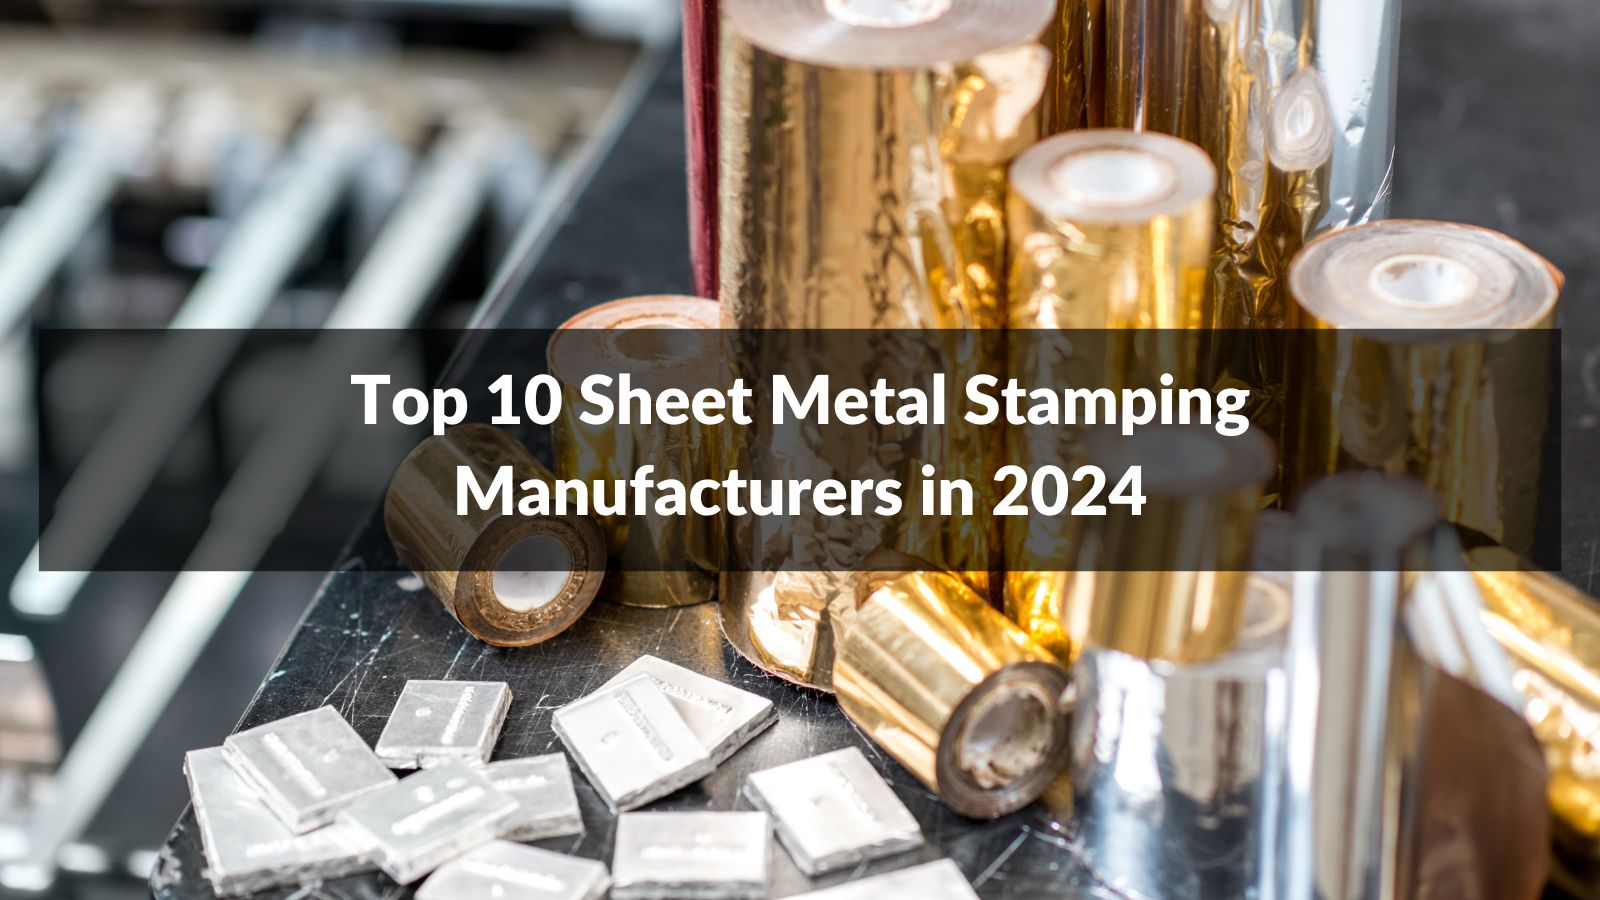 Top 10 Sheet Metal Stamping Manufacturers in 2024